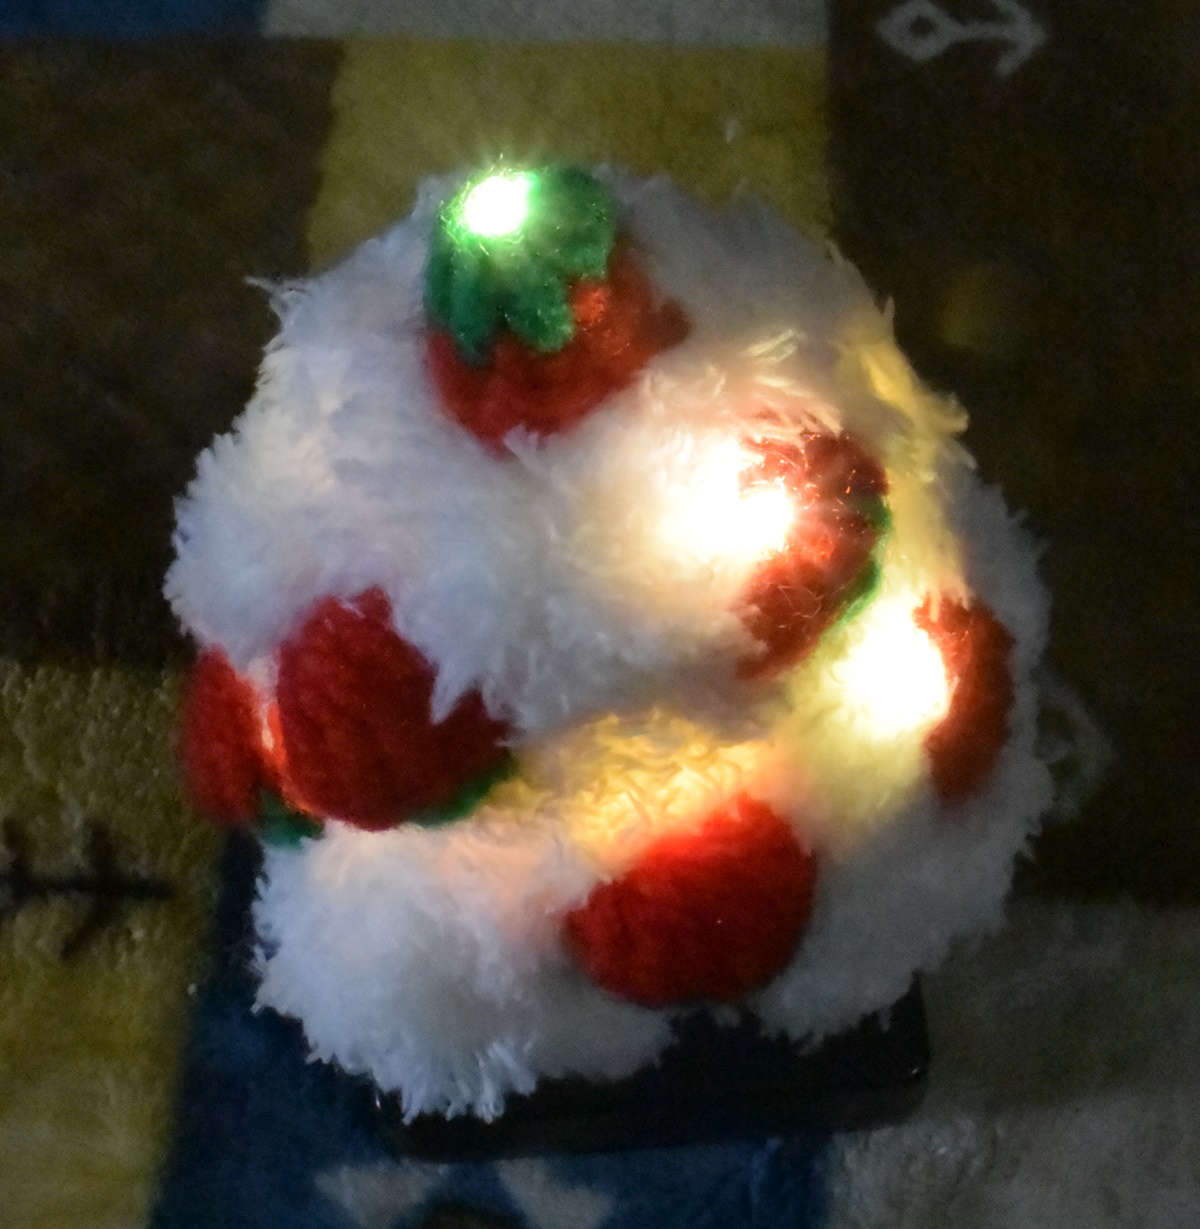 Knitting of Christmas Tree